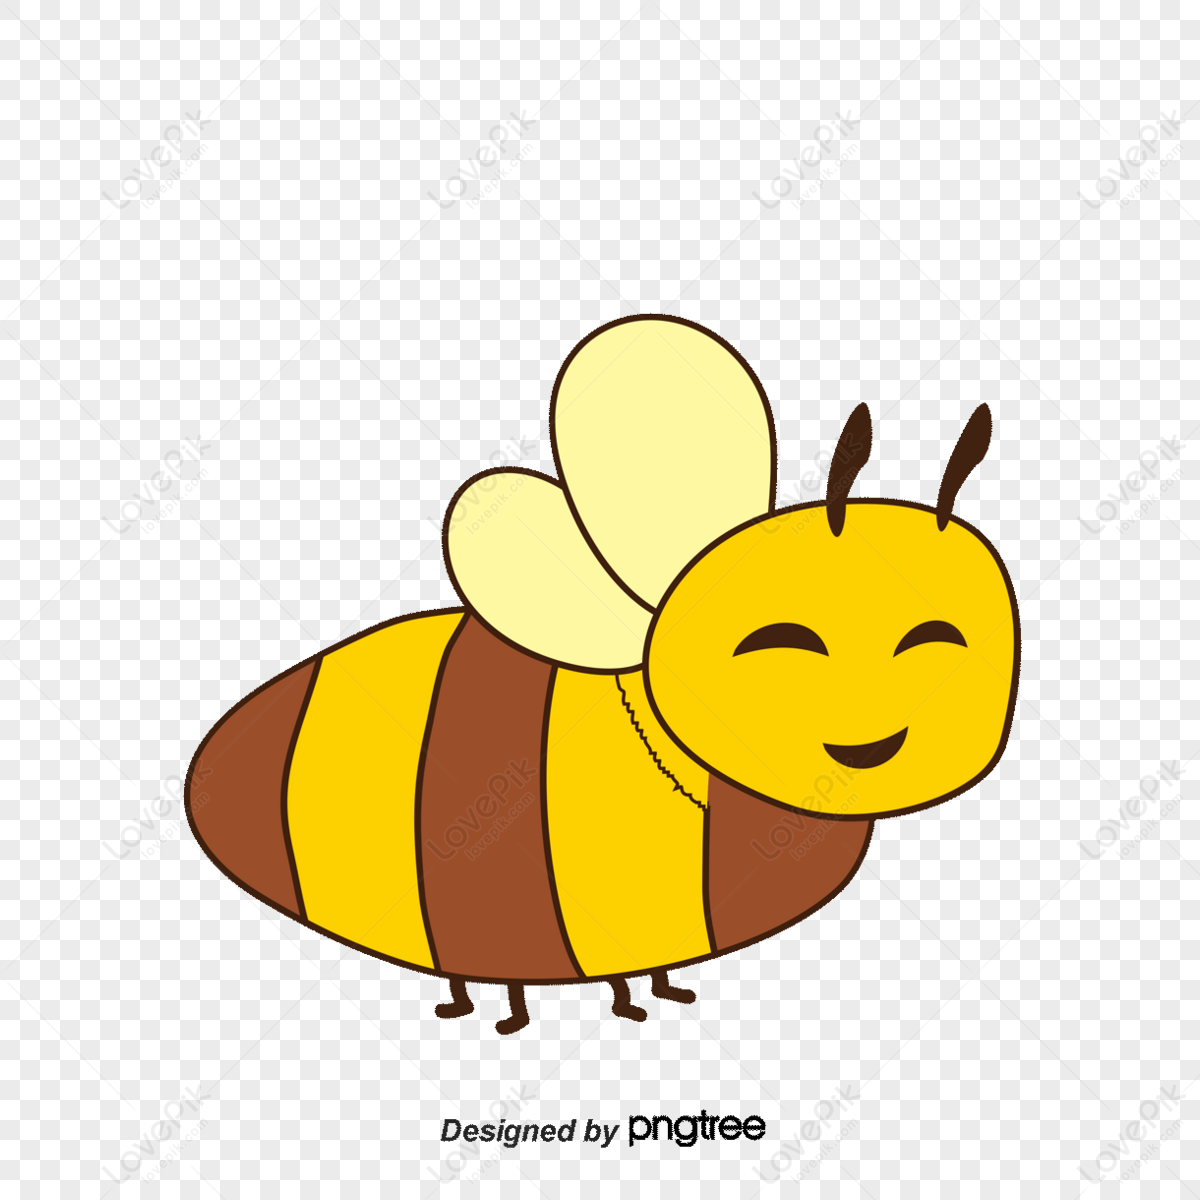 Hình nền : 1920x1080 px, Ong, Hình học, hình sáu góc, Tổ, mật ong, Côn  trùng, thiên nhiên, mẫu, kết cấu, màu vàng 1920x1080 - wallup - 1044443 - Hình  nền đẹp hd - WallHere